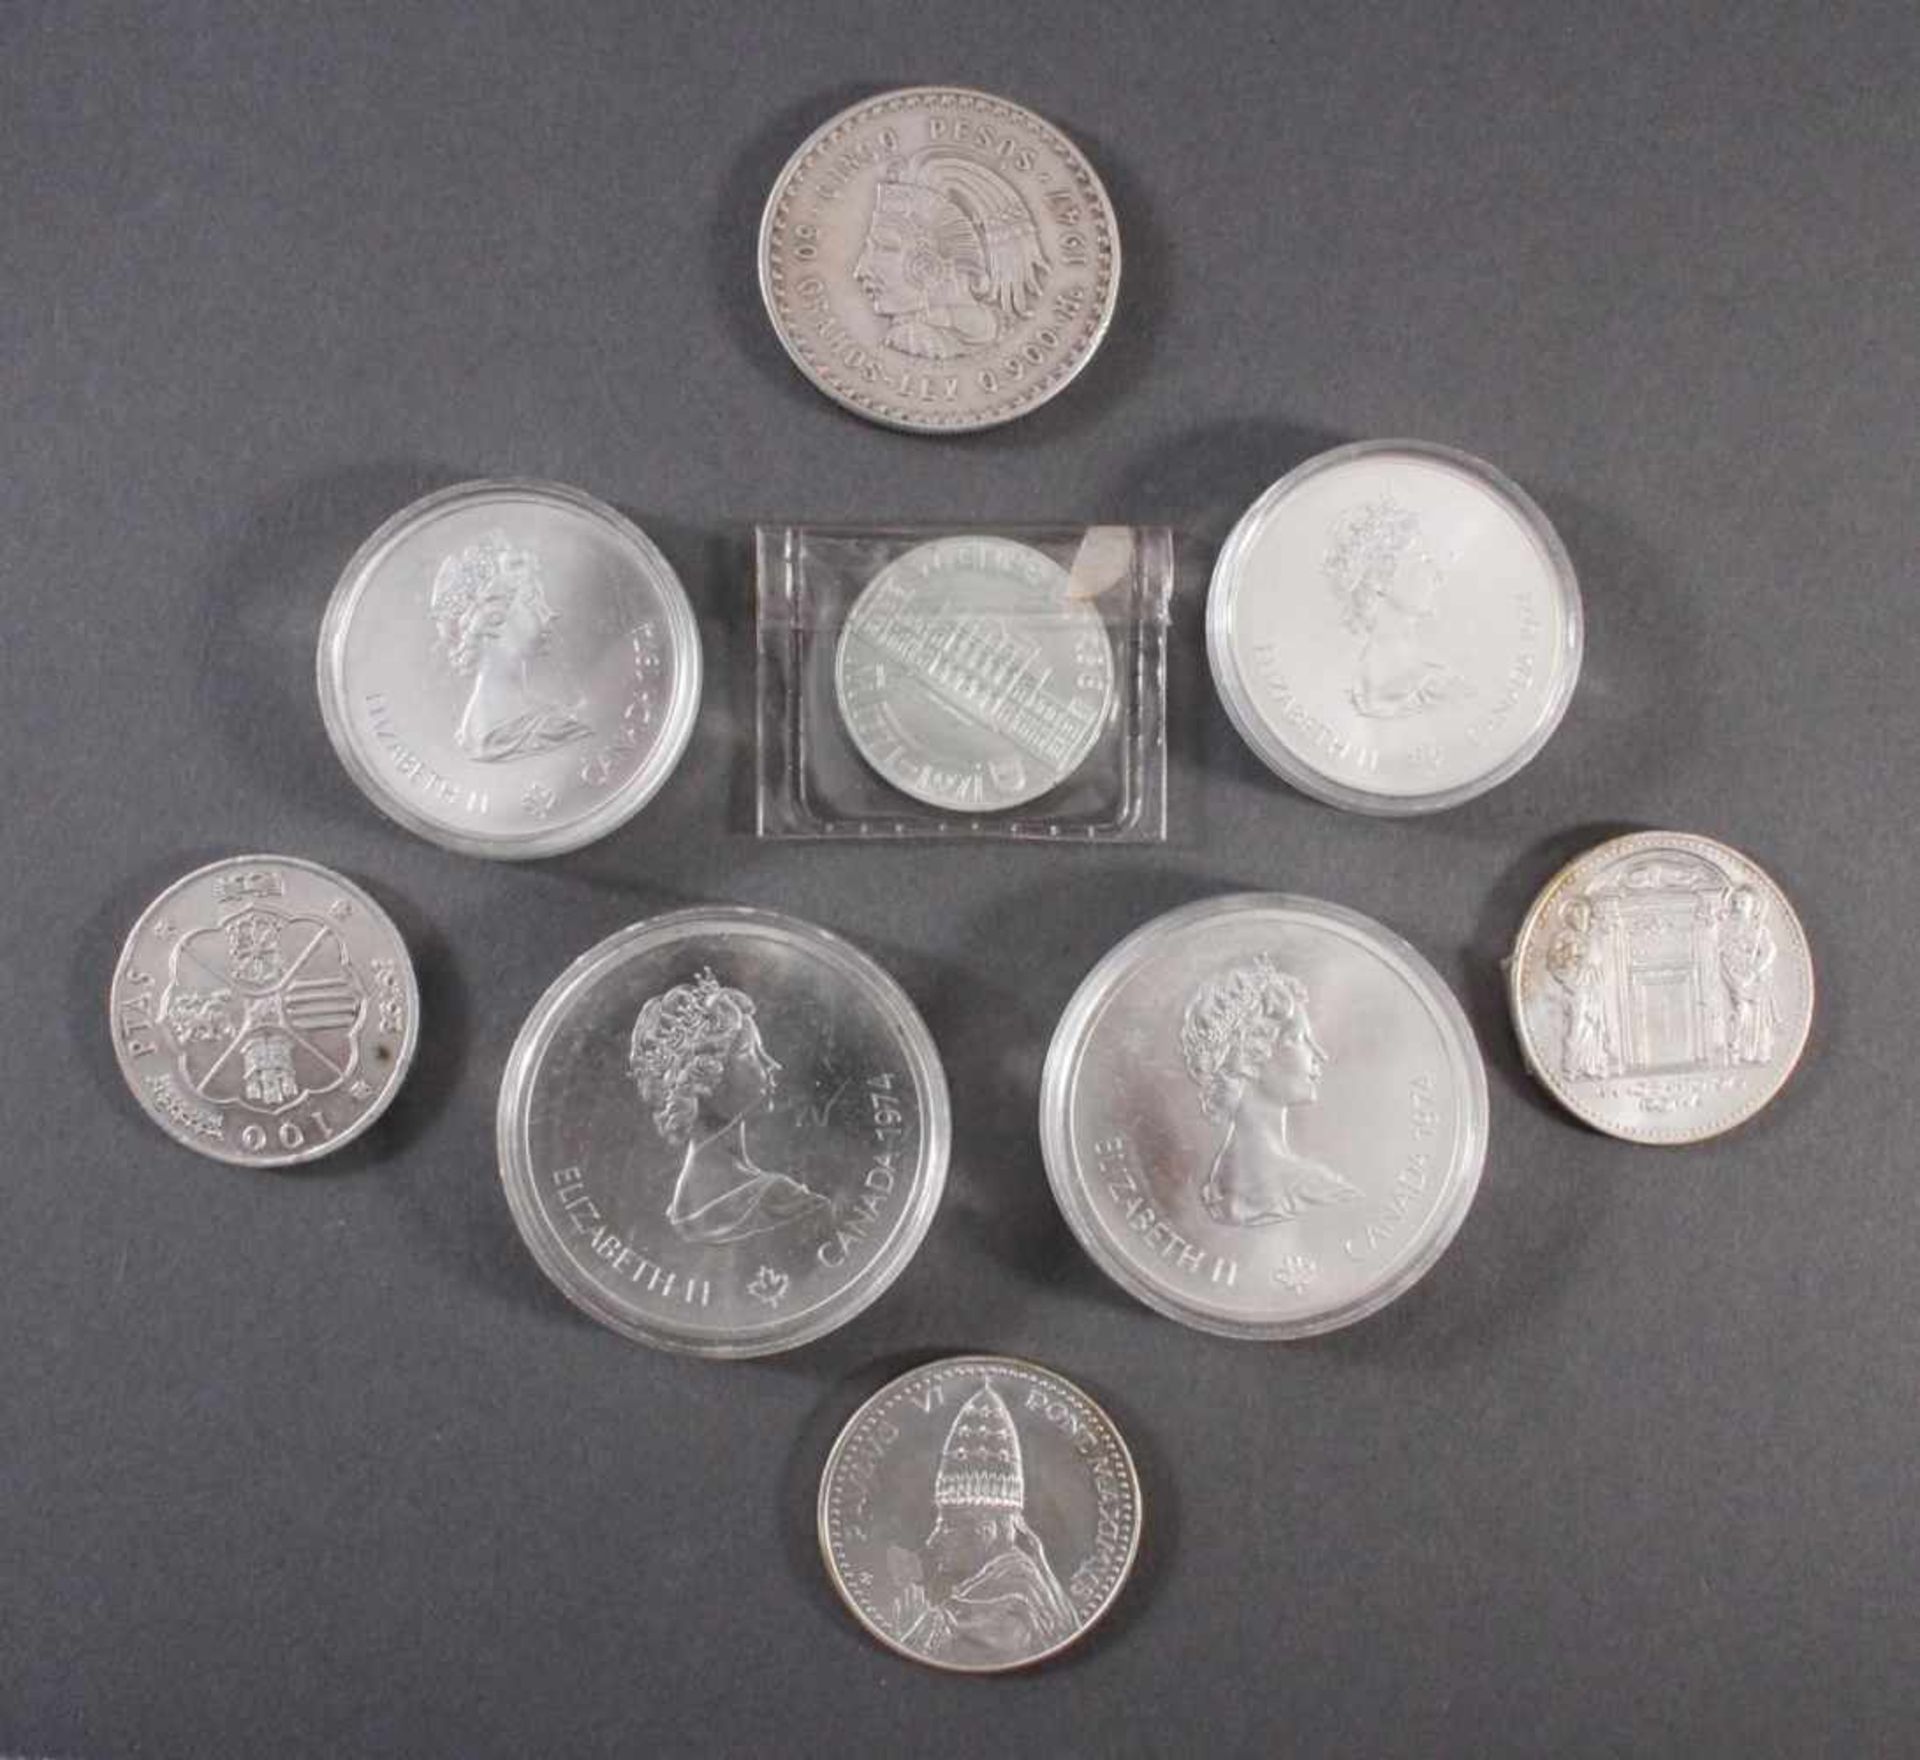 Sammlung Silbermünzen2x 10 Dollar Montreal 1976 PP in Münzkapseln. 2x 5 Dollar Montreal 175 PP in - Bild 2 aus 2